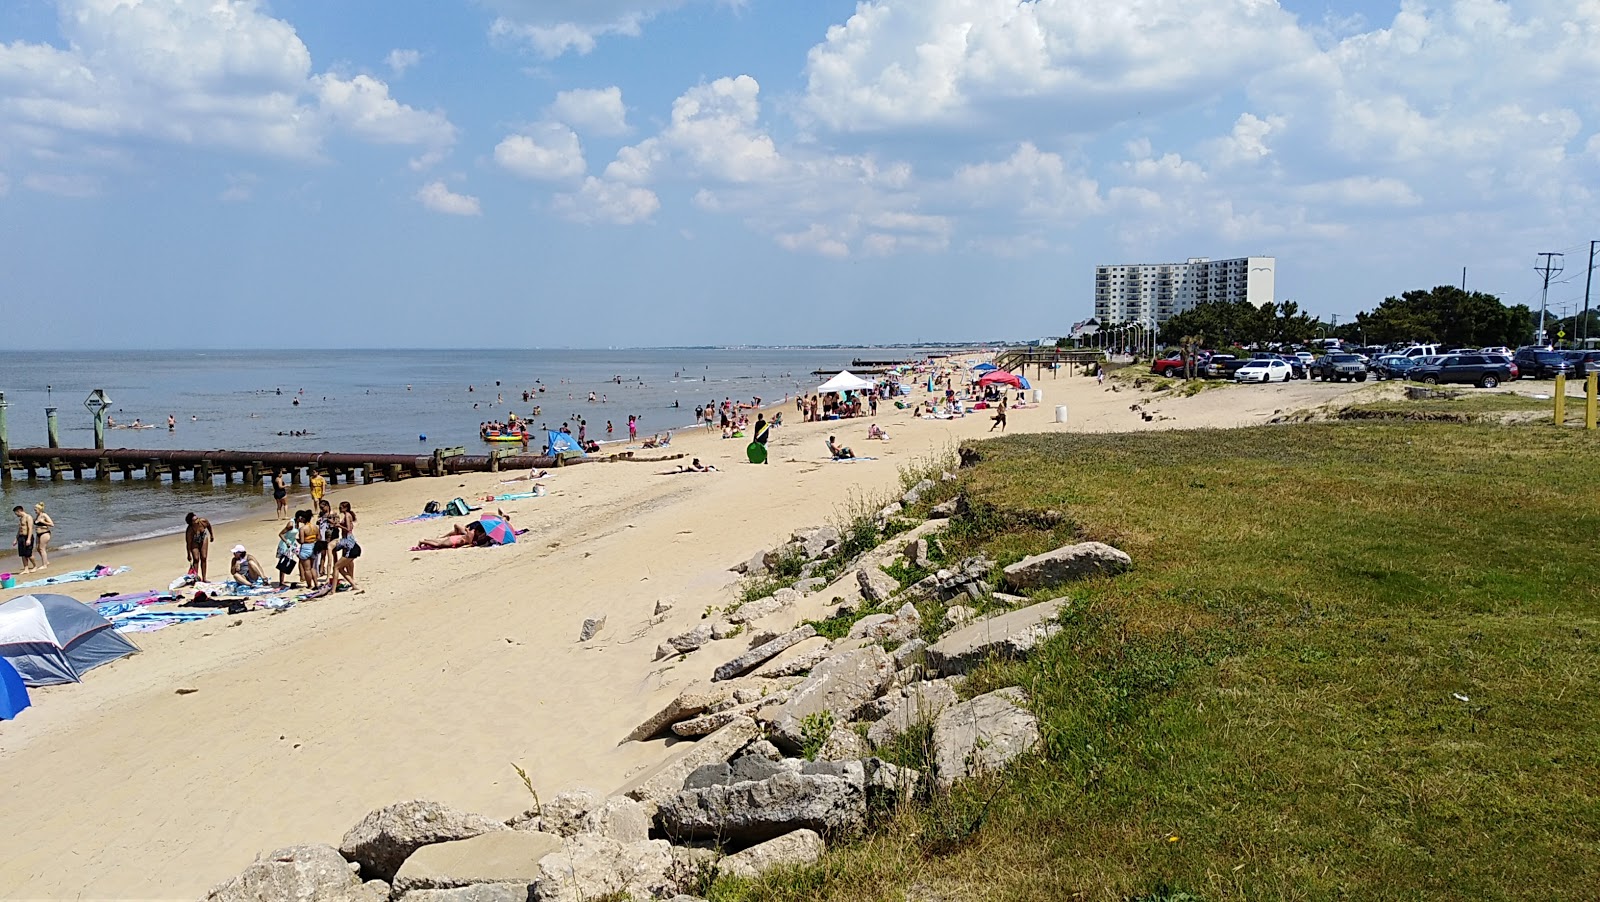 Photo de Ocean View beach - endroit populaire parmi les connaisseurs de la détente